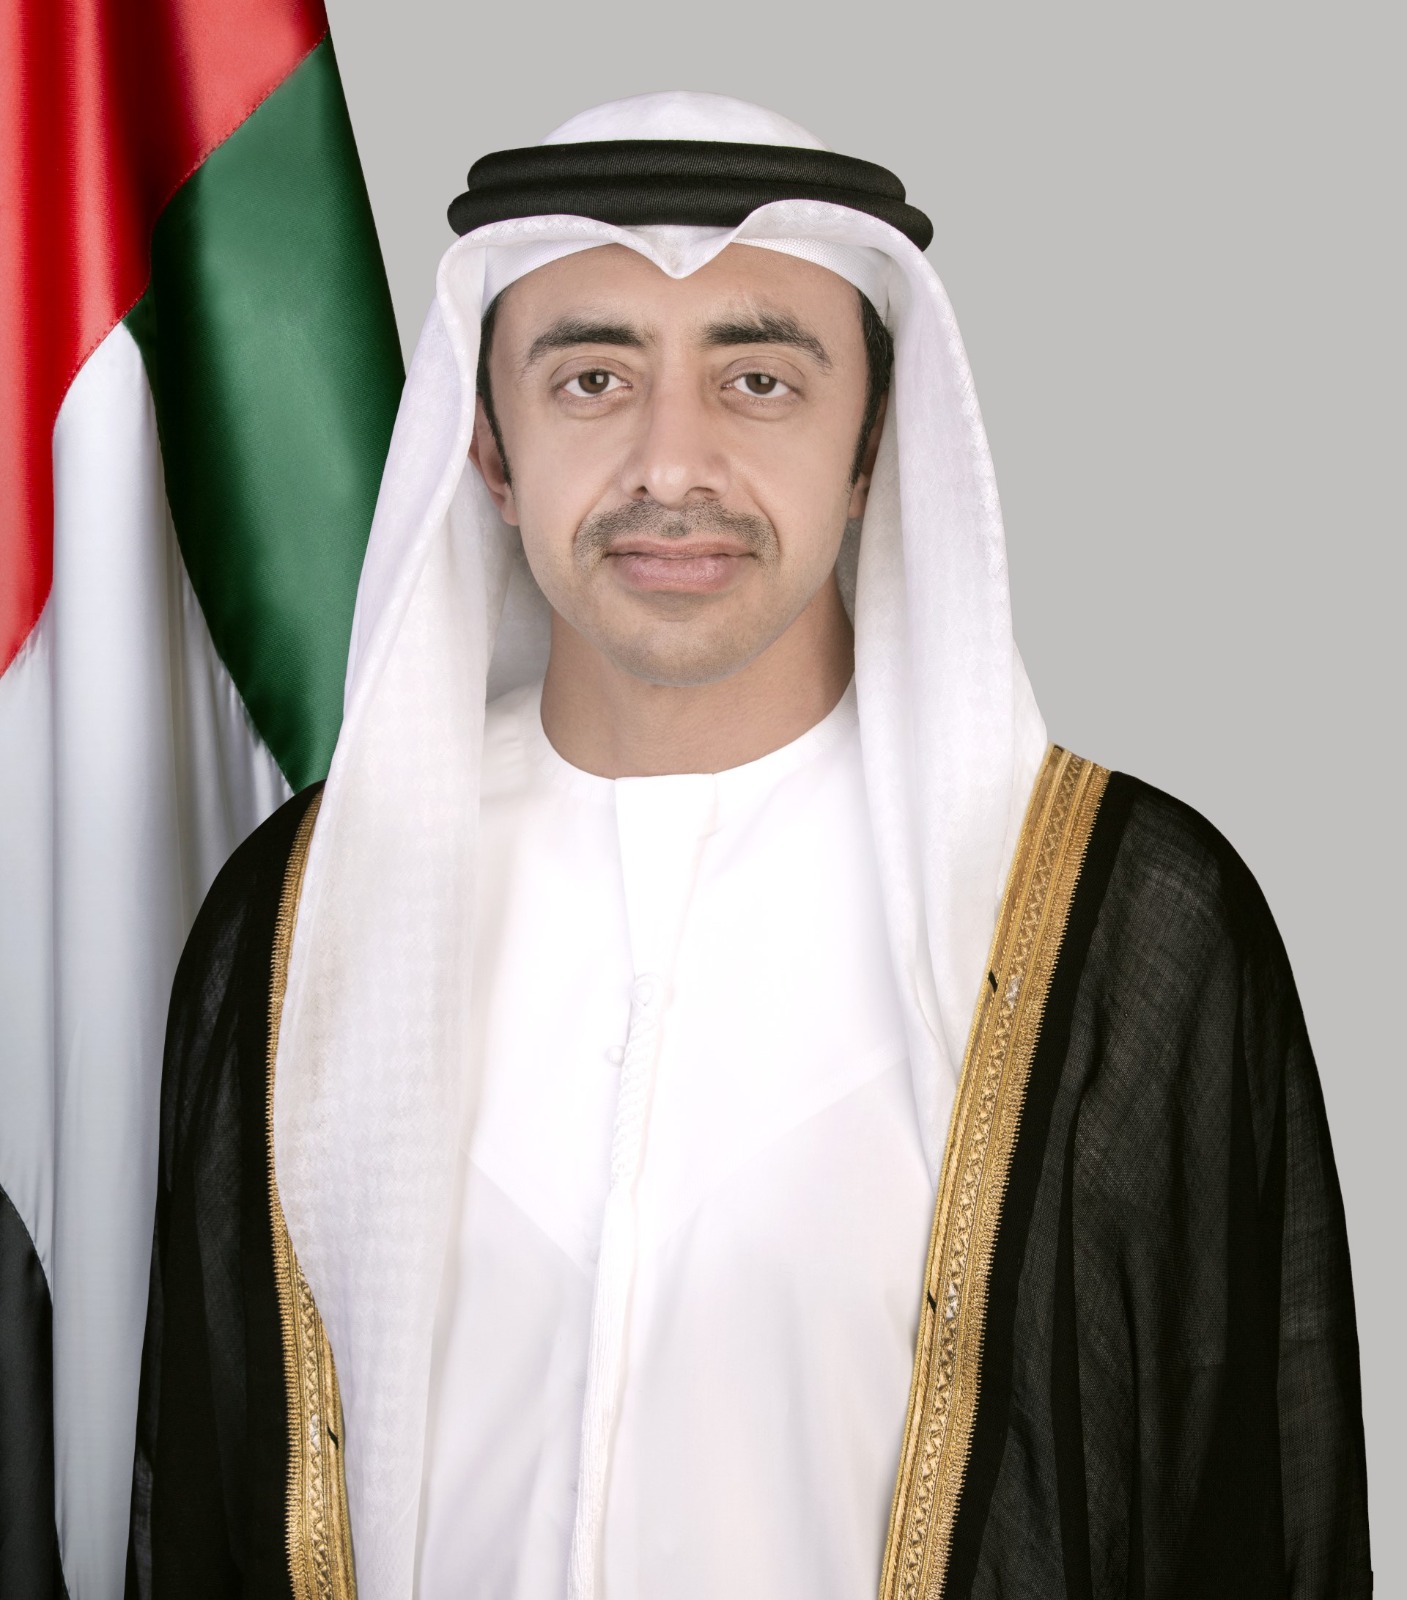 سمو الشيخ عبدالله بن زايد آل نهيان  عضو مجلس الوزراء، وزير الخارجية  الإمارات العربية المتحدة